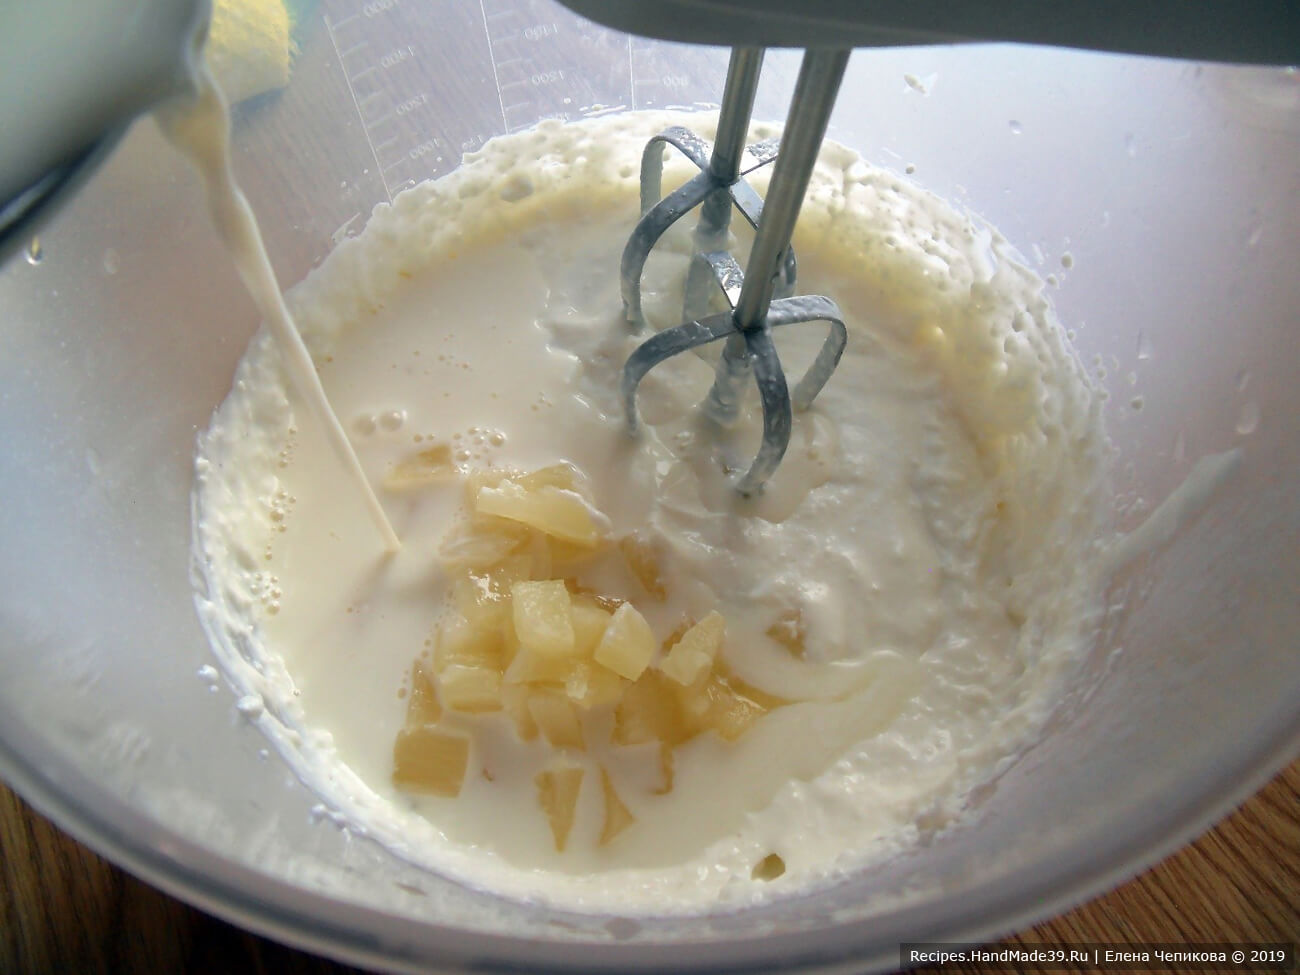 Добавить растворённый в молоке желатин, ананас. Перемешать